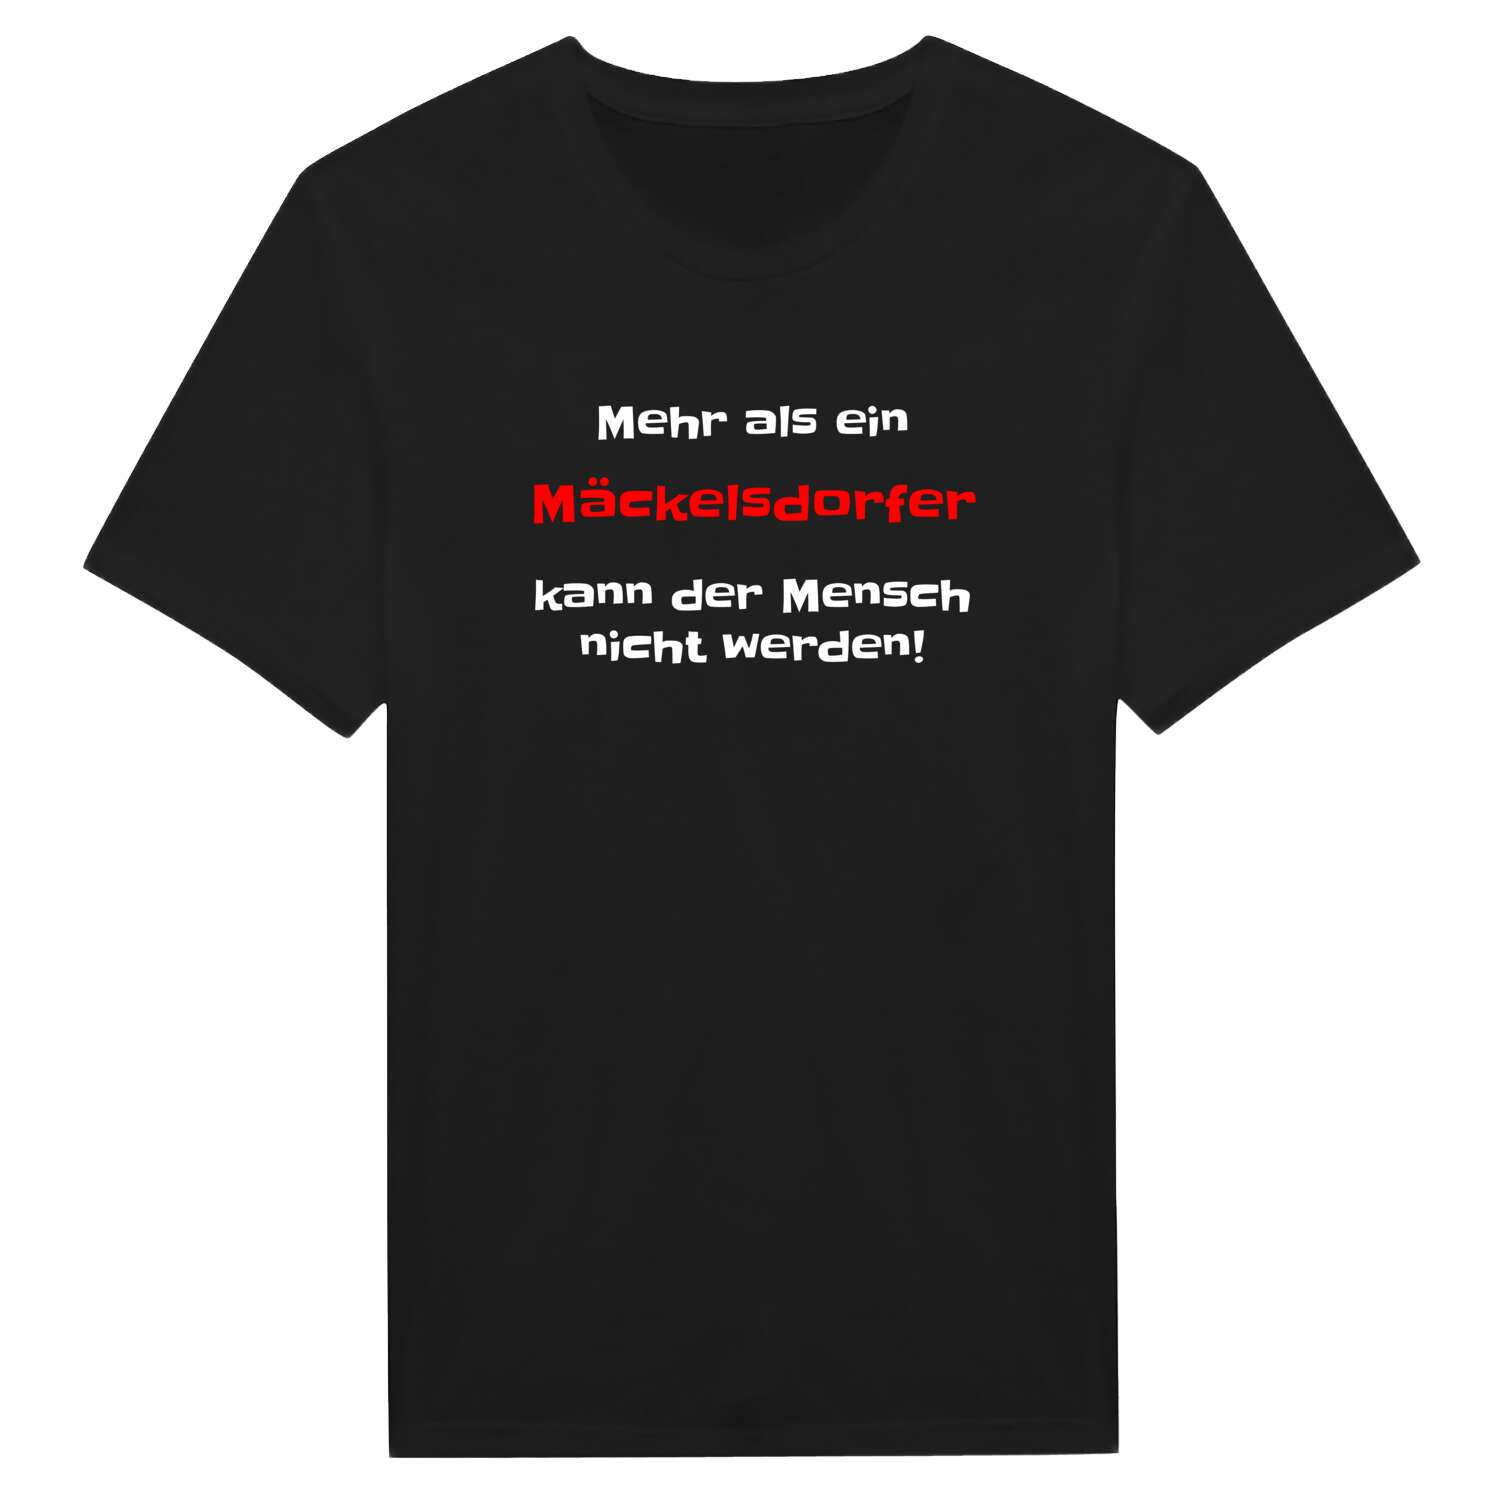 Mäckelsdorf T-Shirt »Mehr als ein«